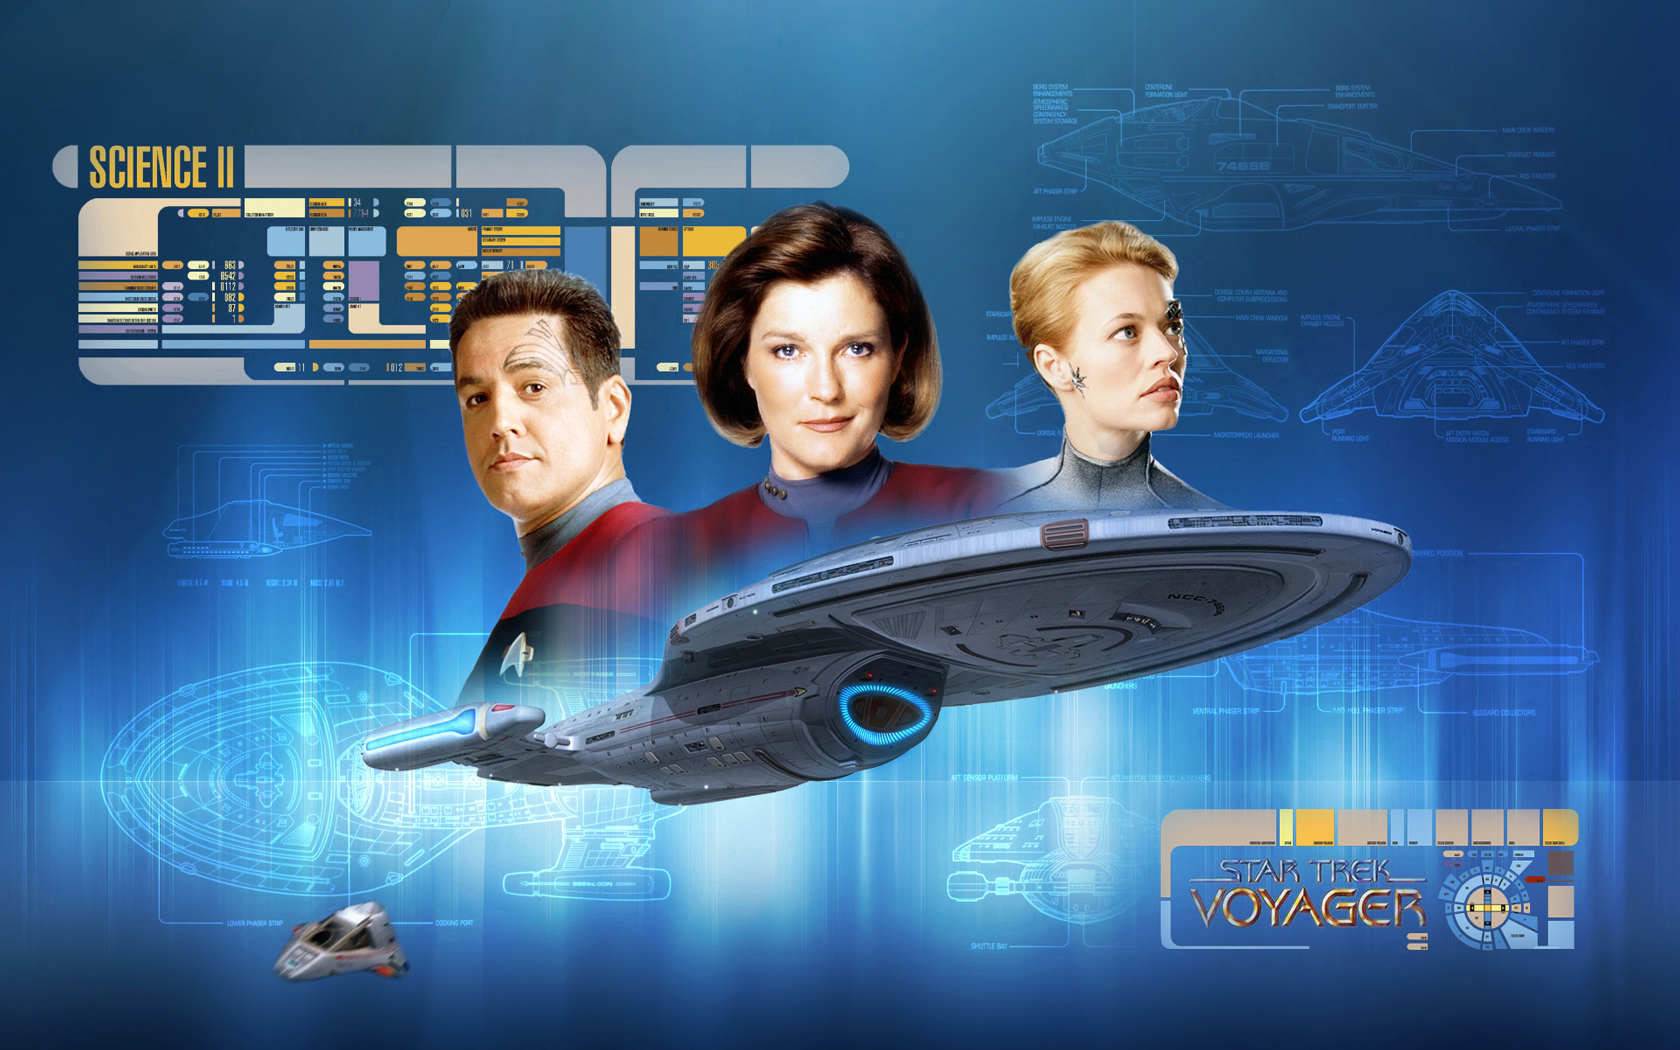 - Star Trek USS Voyager - free Star Trek computer desktop wallpaper, pictures, images.